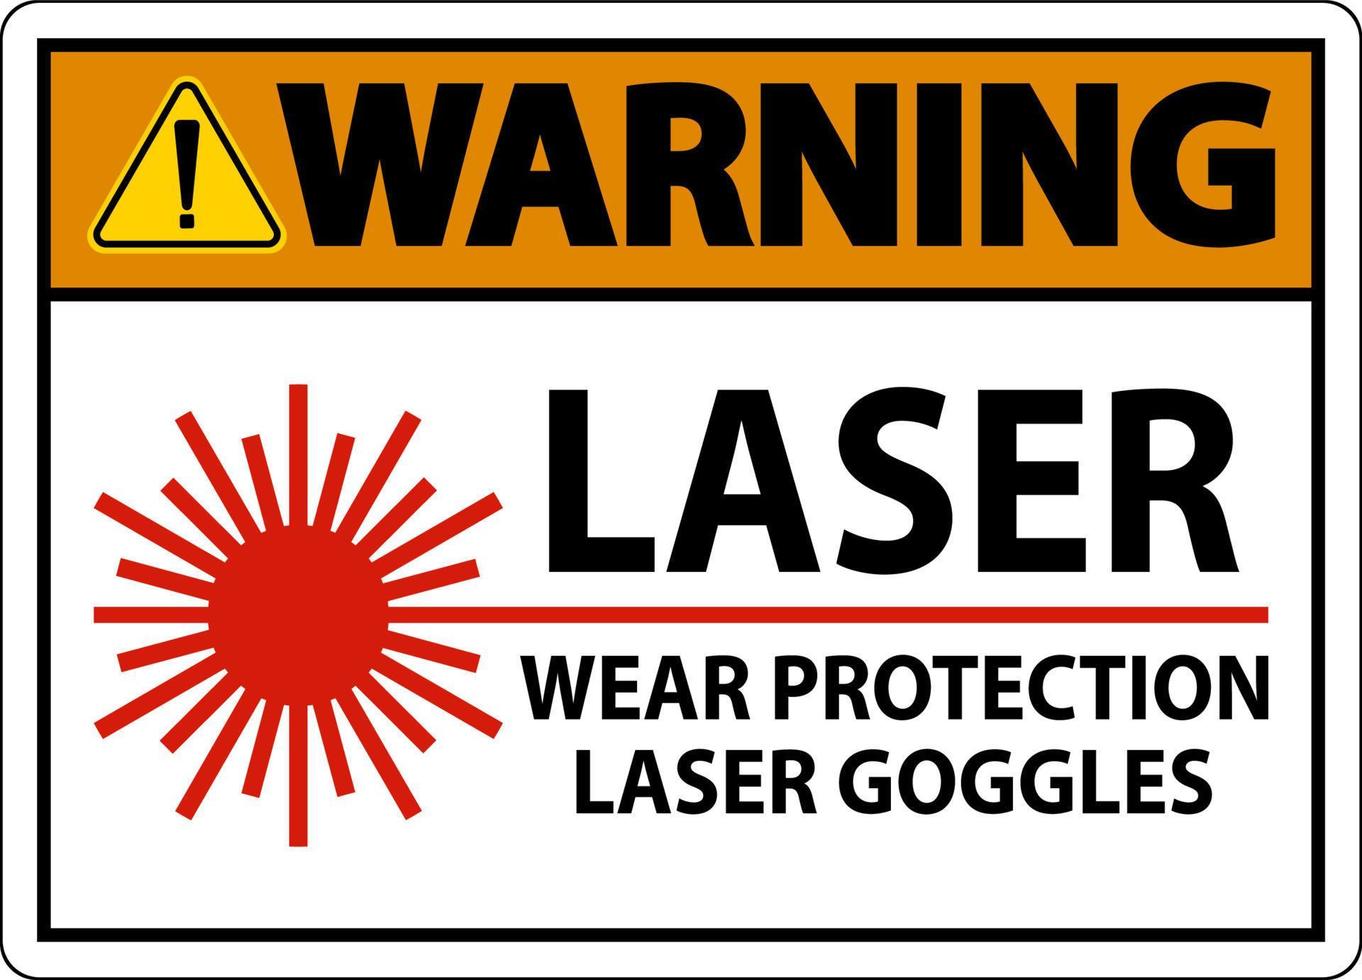 sinal de óculos de proteção a laser de aviso no fundo branco vetor